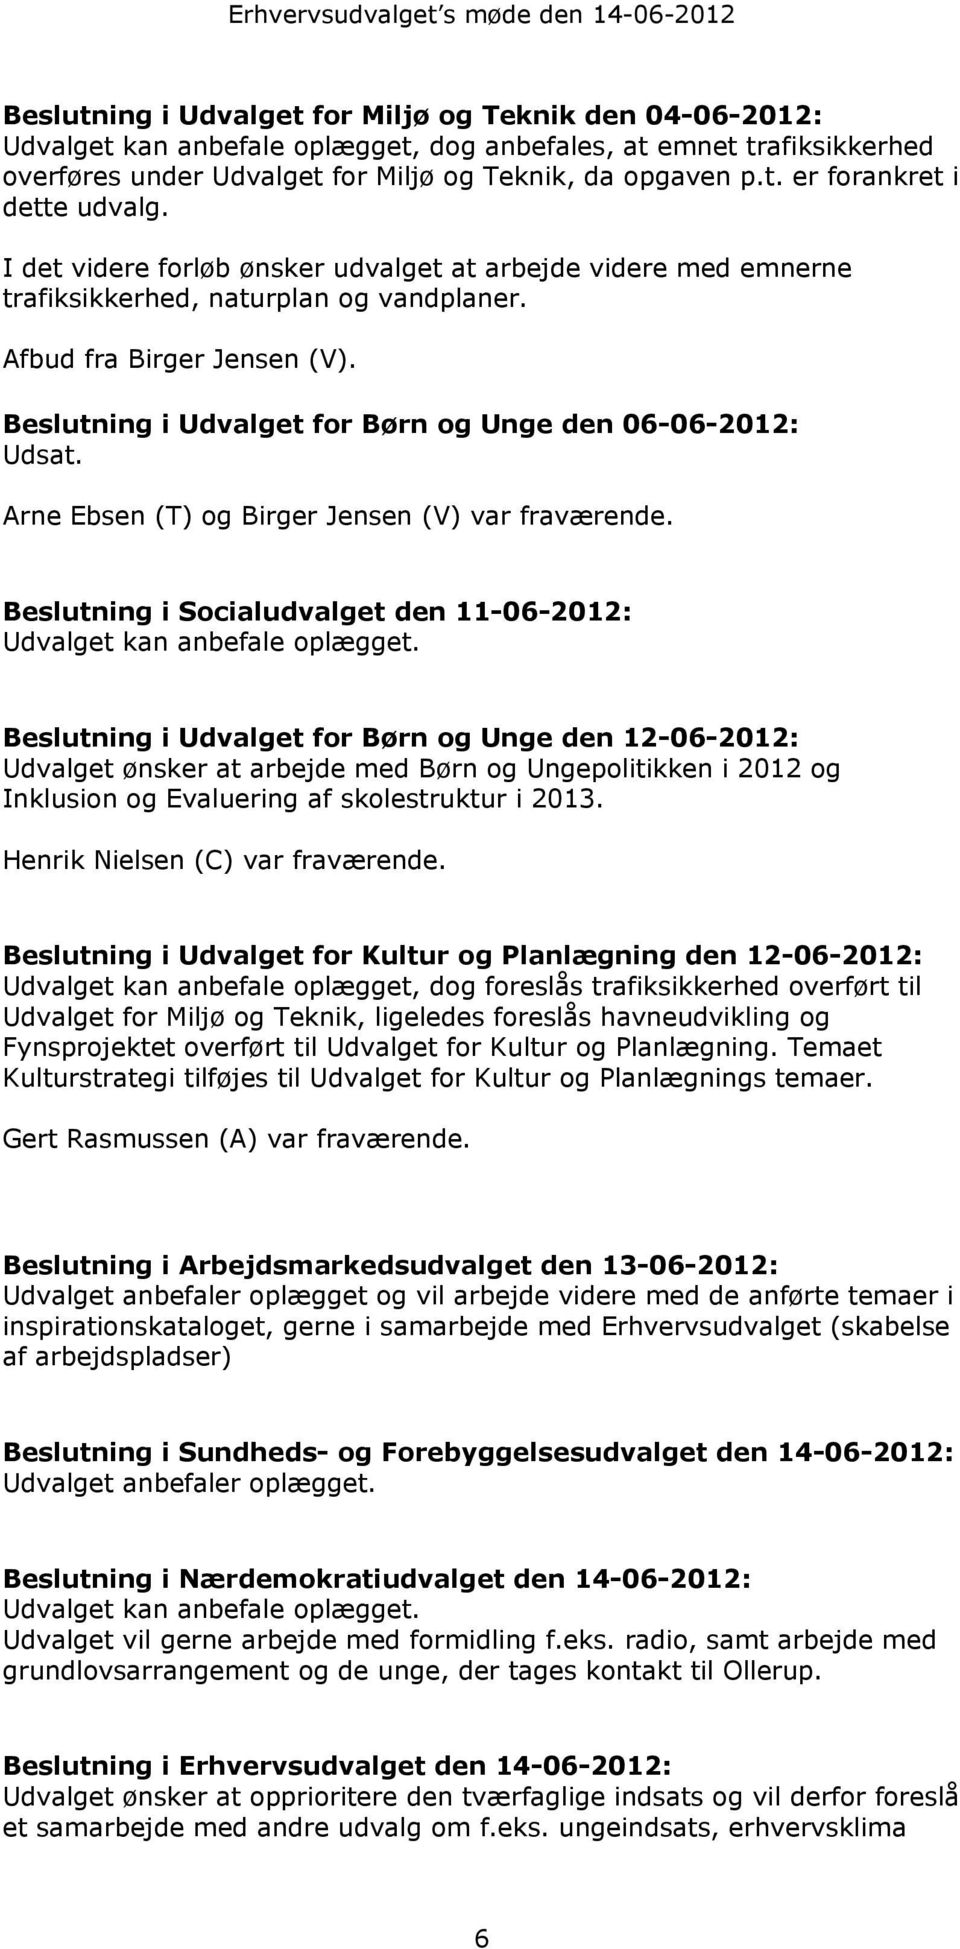 Beslutning i Udvalget for Børn og Unge den 06-06-2012: Udsat. Arne Ebsen (T) og Birger Jensen (V) var fraværende. Beslutning i Socialudvalget den 11-06-2012: Udvalget kan anbefale oplægget.